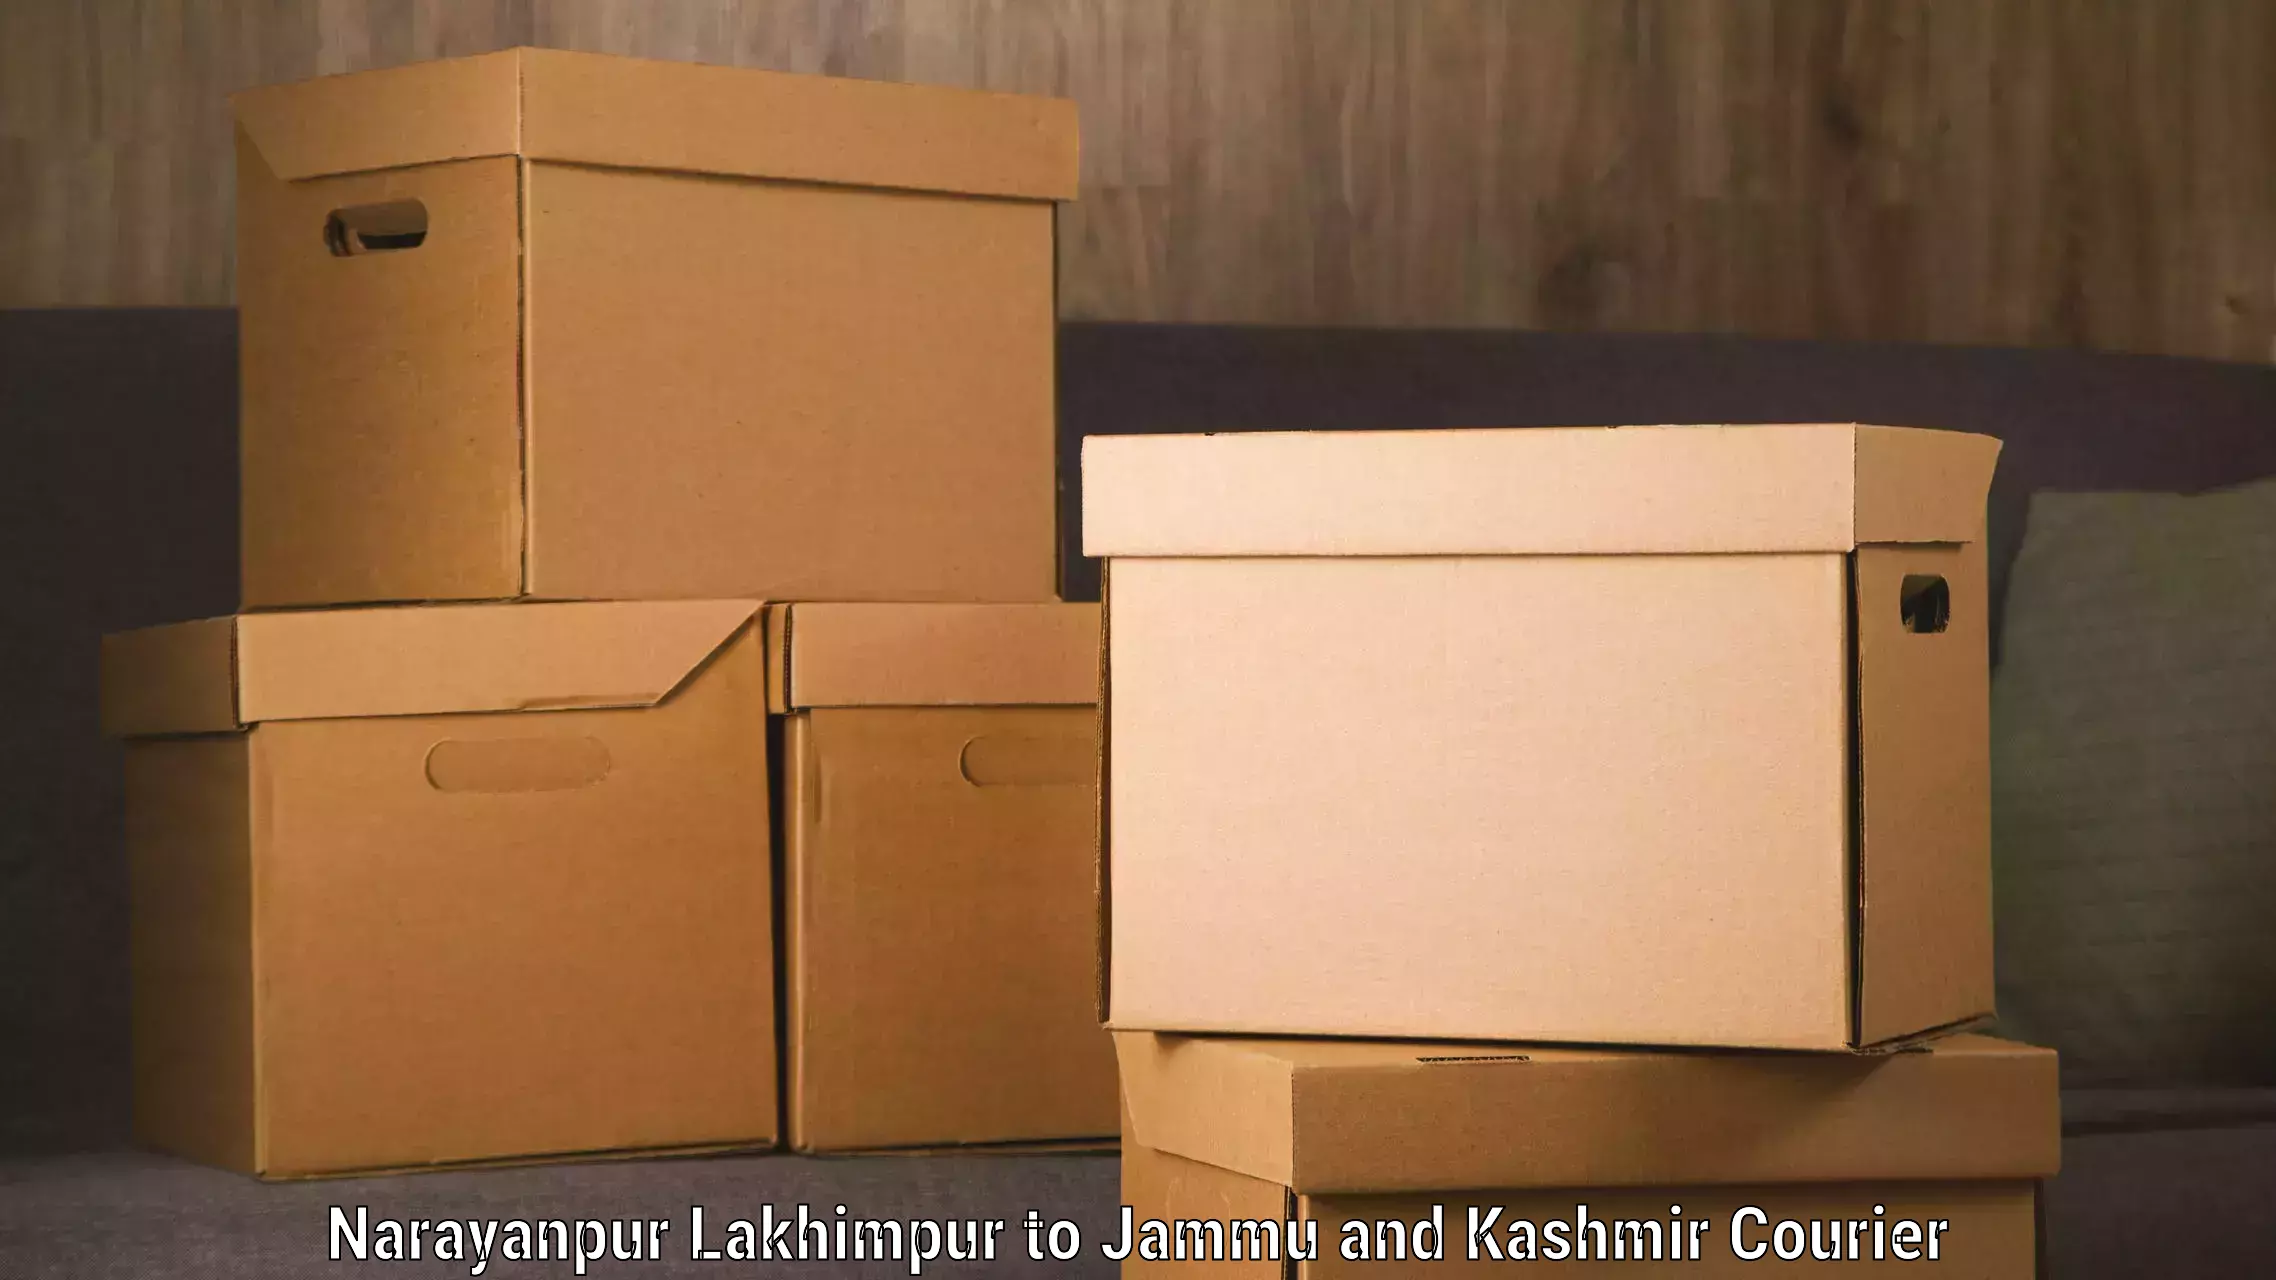 Baggage shipping experts Narayanpur Lakhimpur to Bandipur